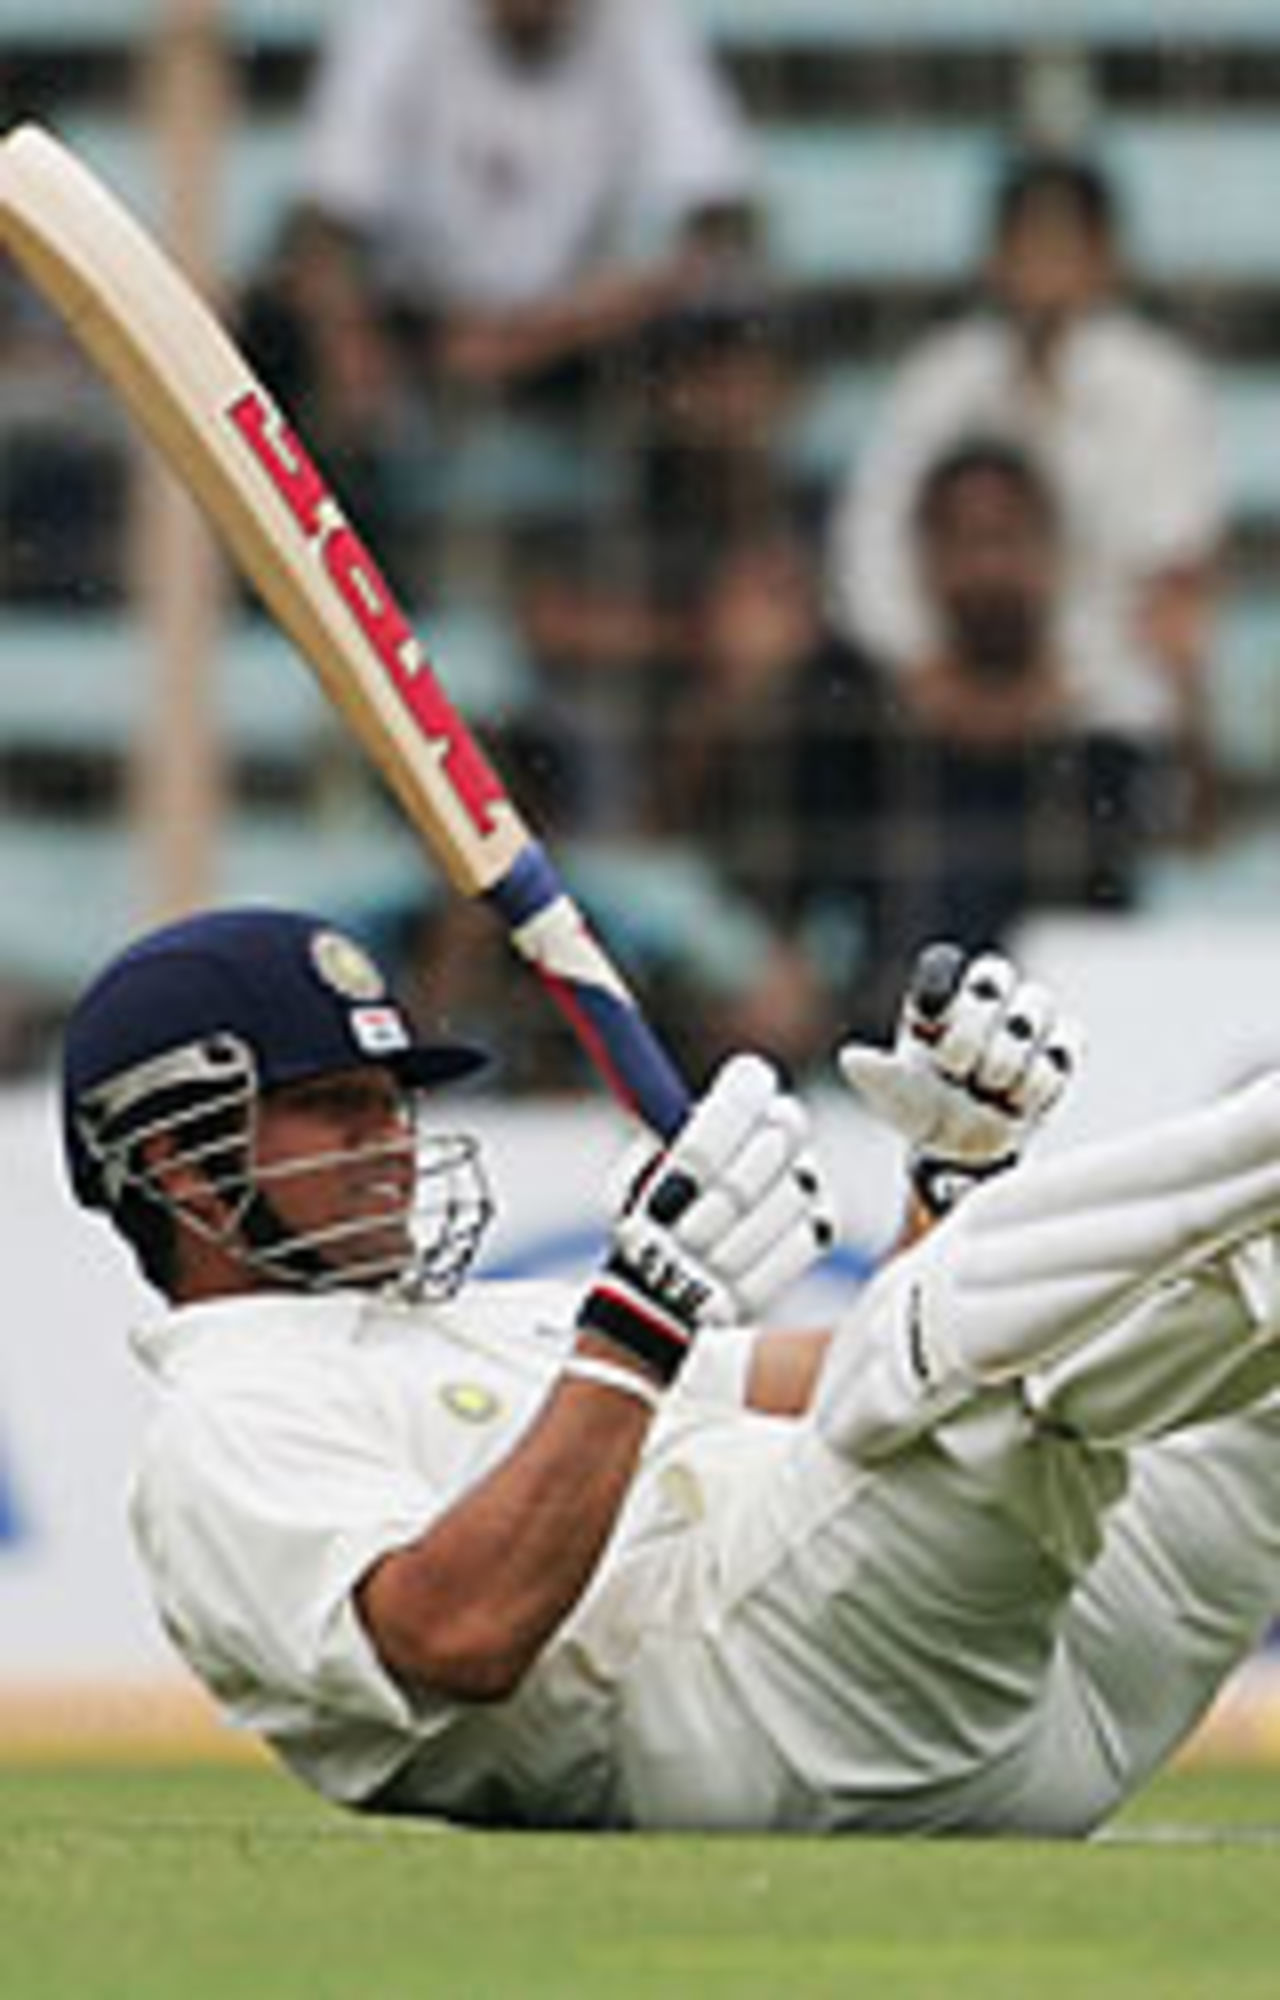 Sachin Tendulkar falls down, India v Australia, 1st Test, Mumbai, November 3, 2004